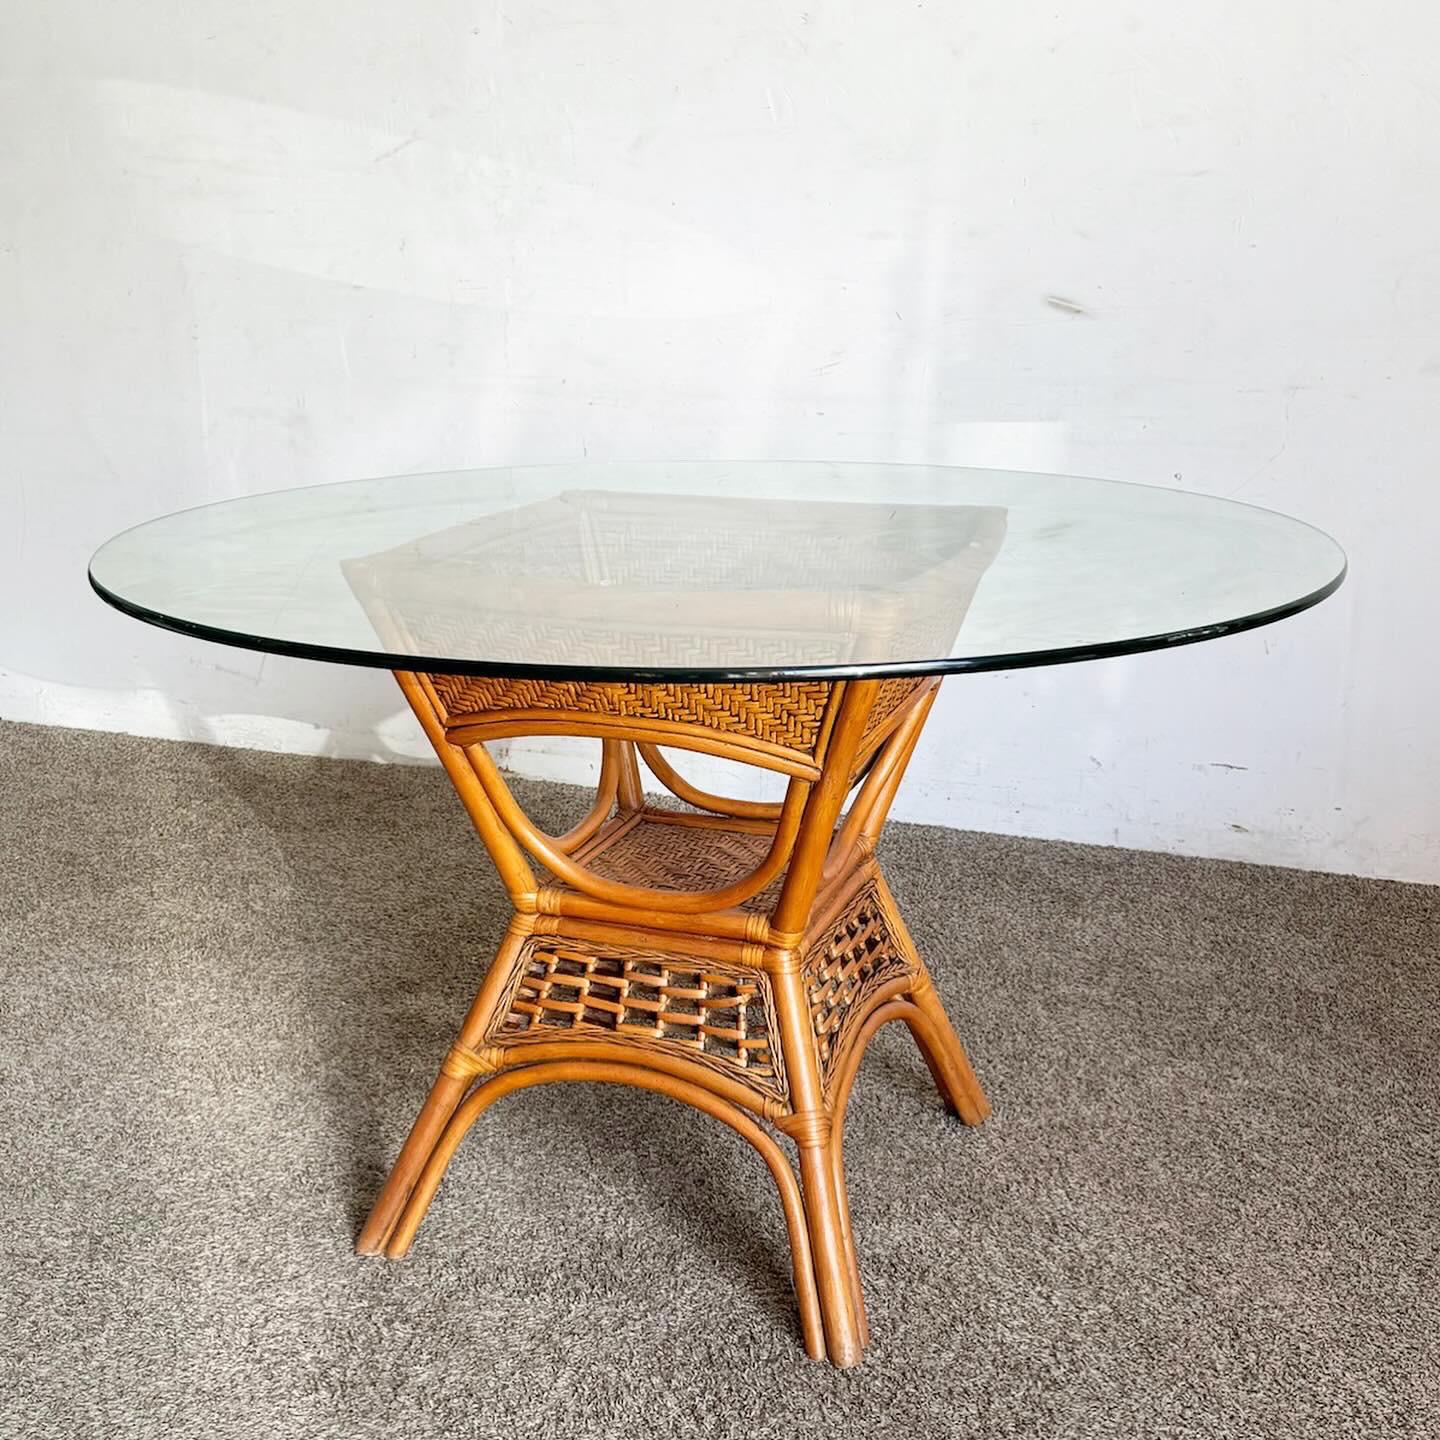 Découvrez un mélange d'élégance naturelle et de style contemporain avec la table à manger Boho Chic en bambou et rotin avec plateau en verre. Dotée d'une base en bambou et rotin et d'un plateau moderne en verre transparent, cette table est une pièce